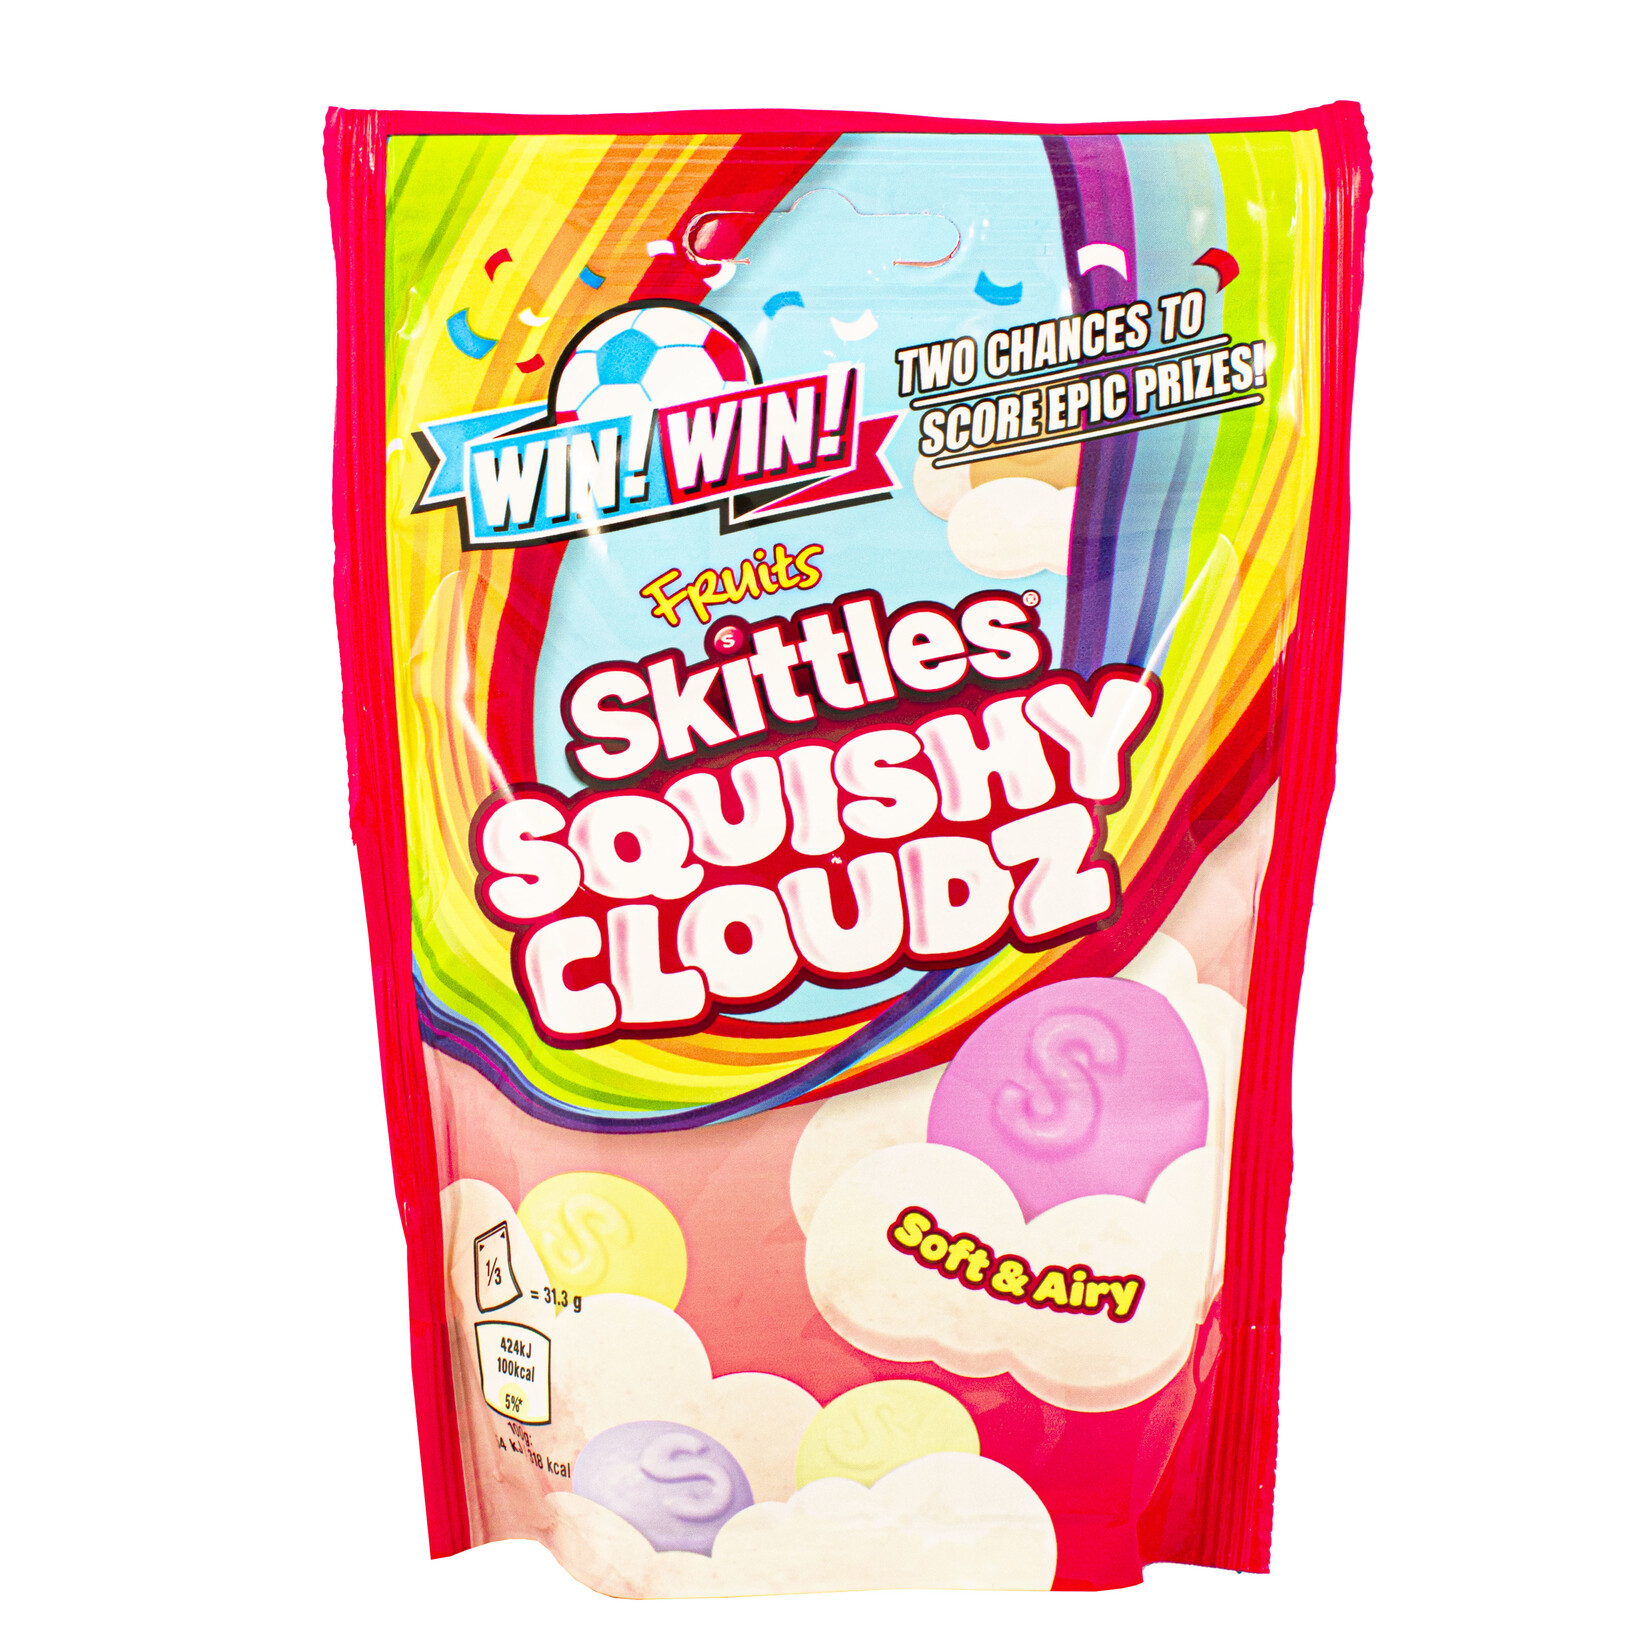 Skittles Skittles  Squishy Cloudz fruits 94g